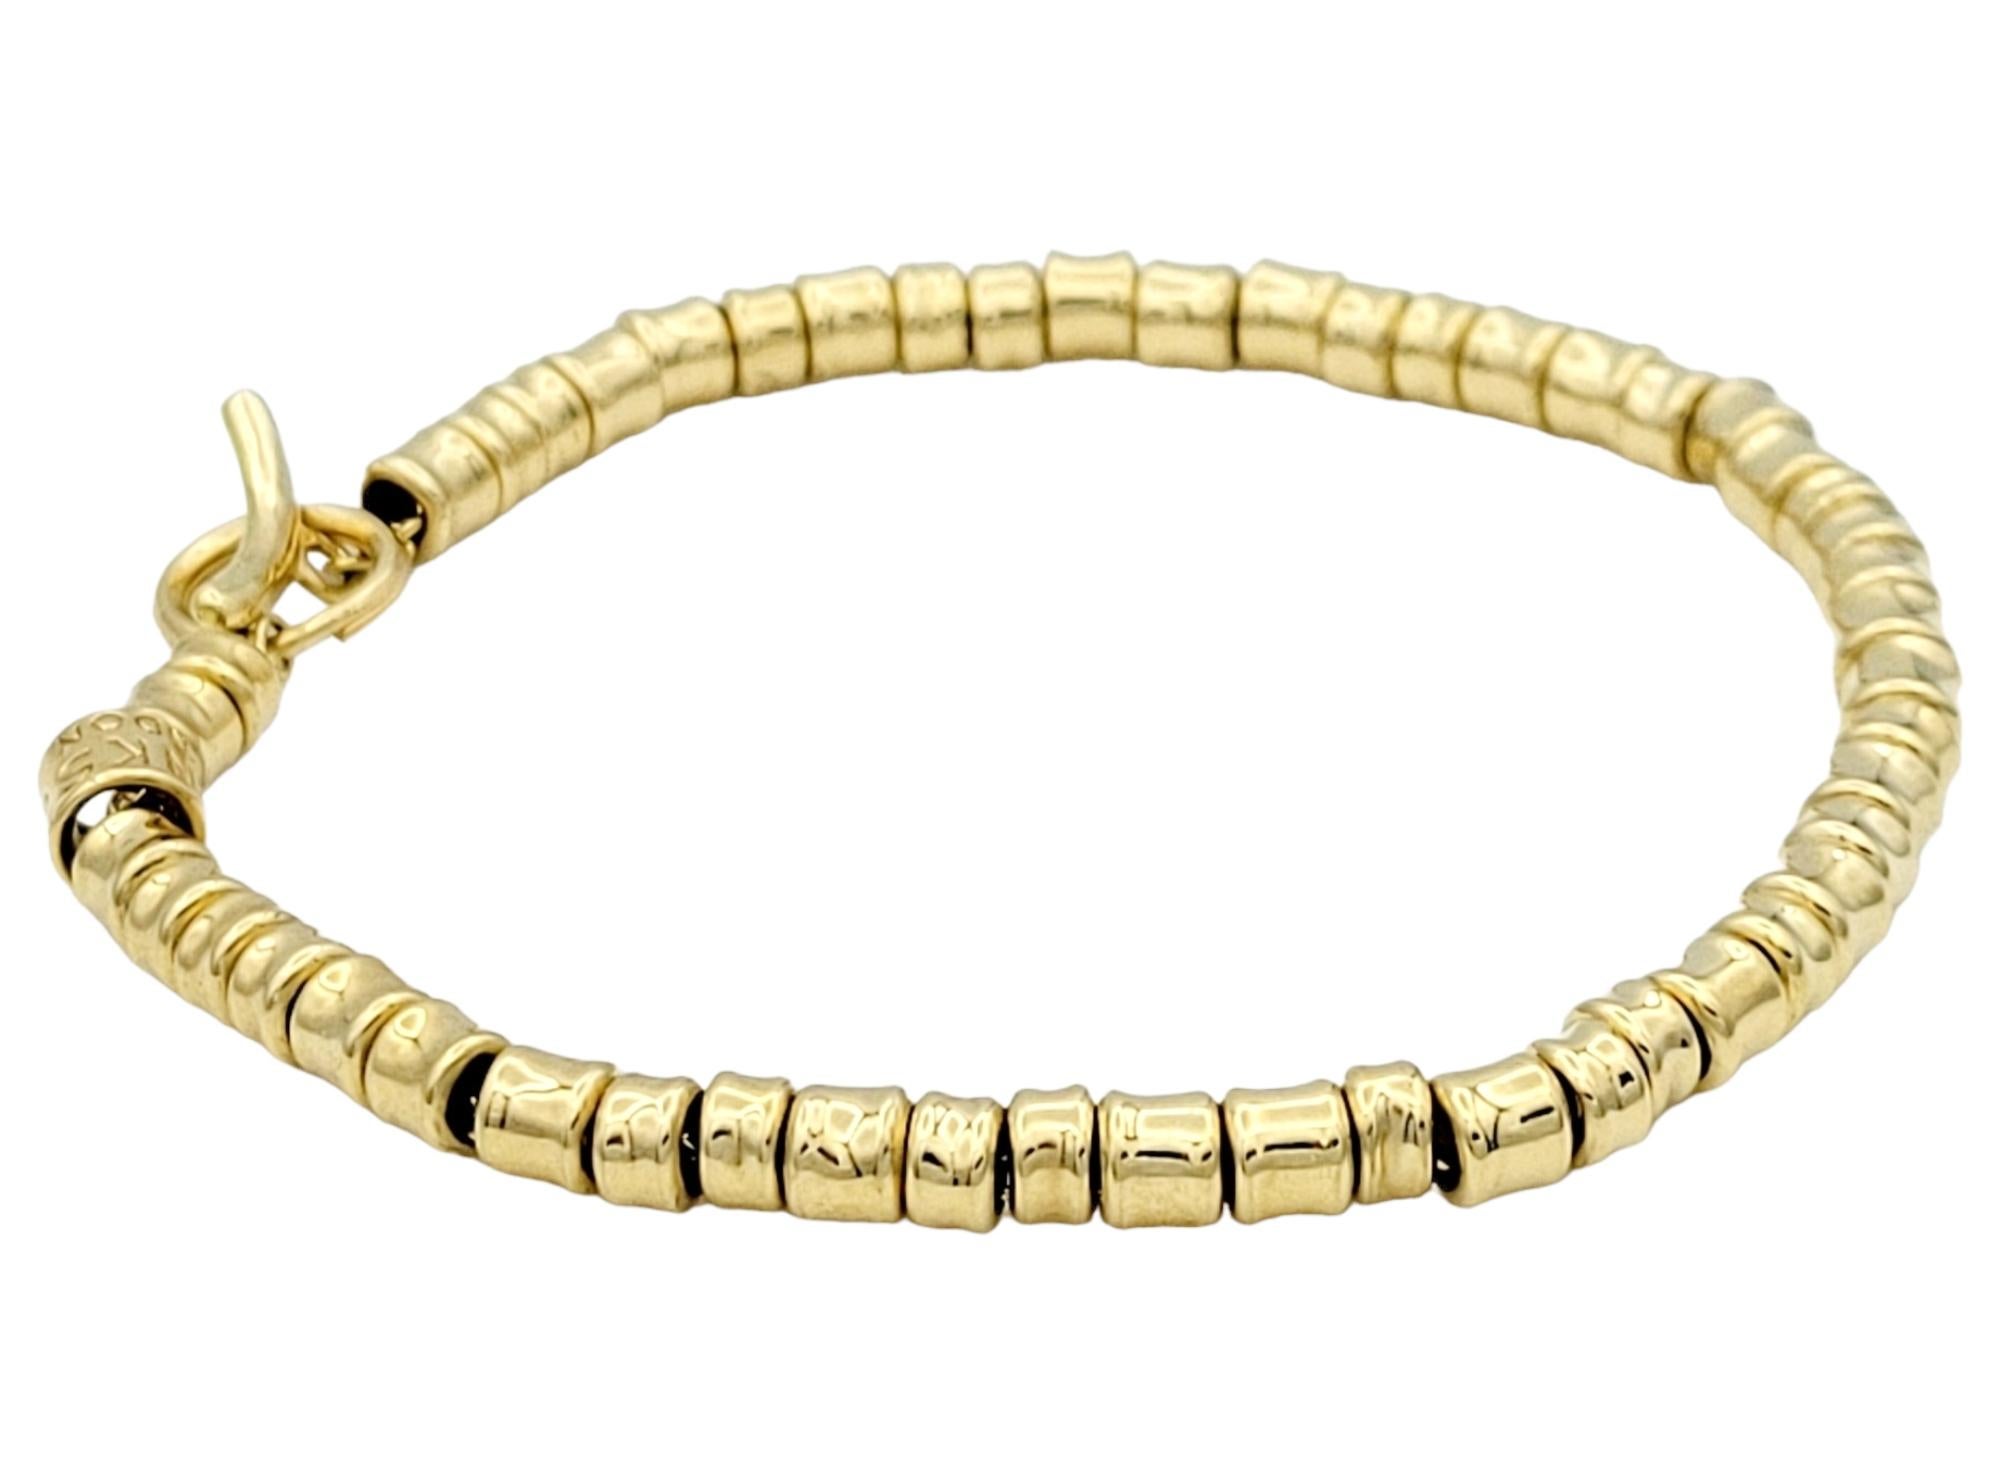 Cet exquis bracelet Links of London en luxueux or jaune 18 carats incarne l'élégance et la sophistication. Fabriquée à la perfection, cette chaîne à maillons d'ancrage de 7,5 pouces ornée de perles tubulaires encerclera gracieusement votre poignet